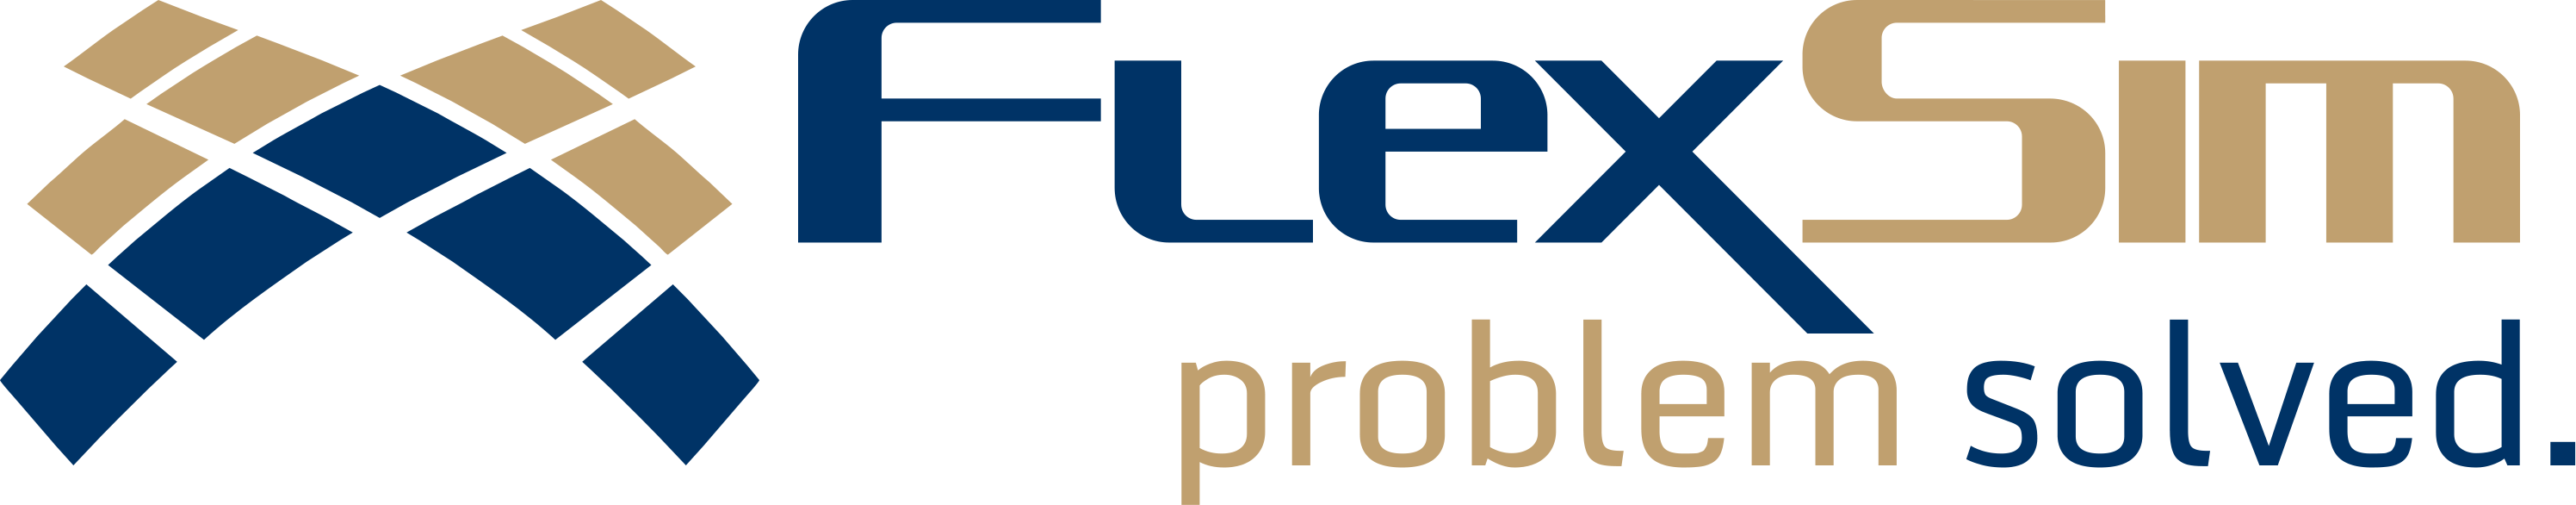 1062-flexsim-problem-solved.png